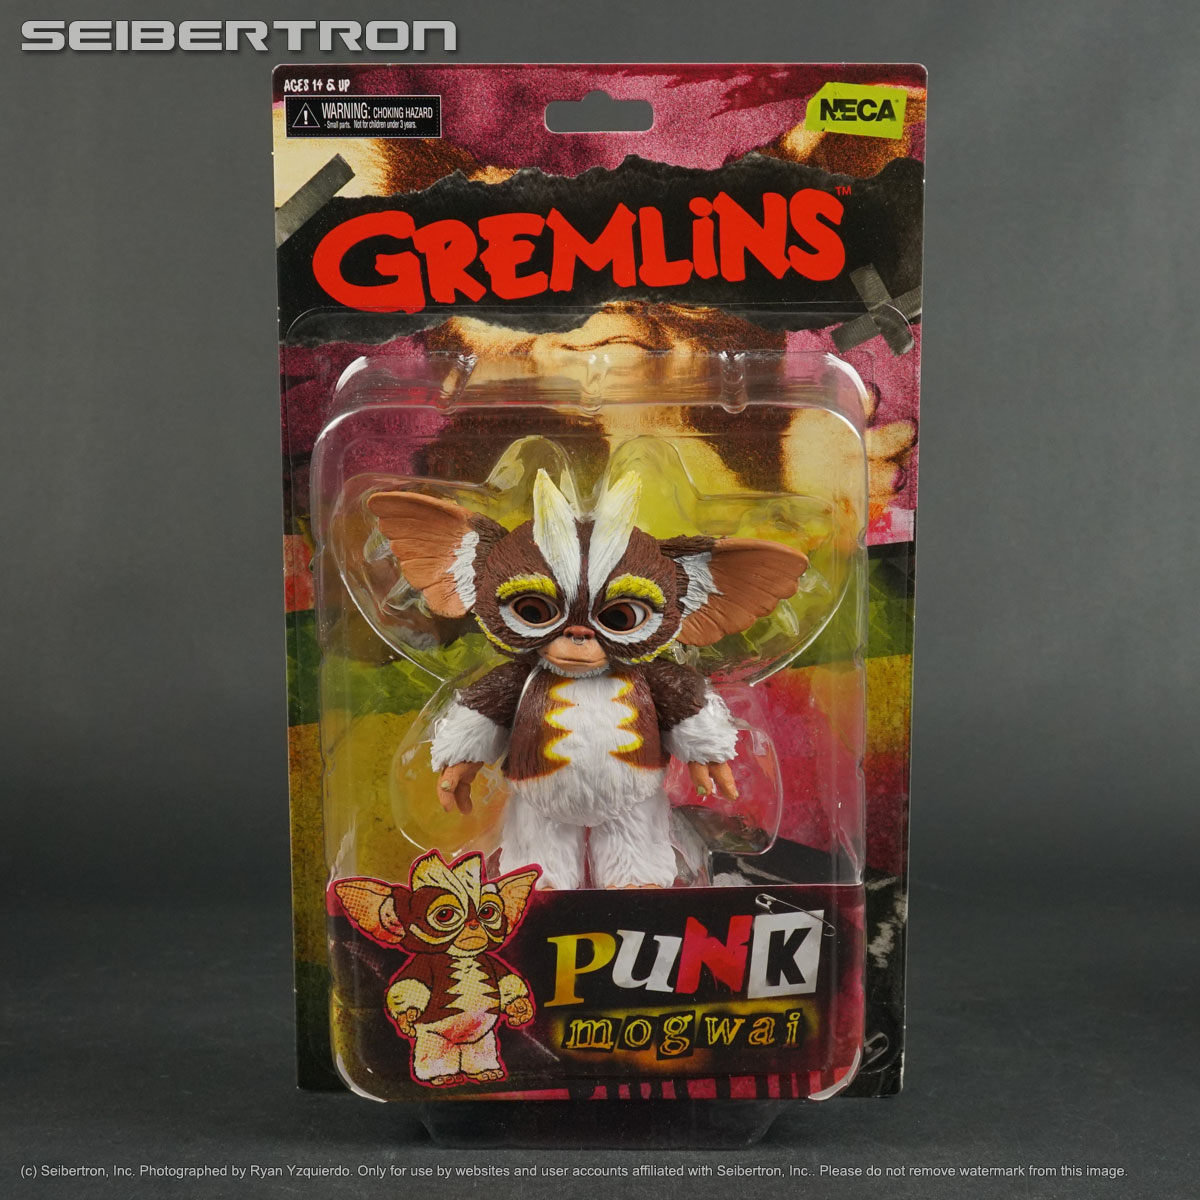 PUNK MOGWAI Gremlins 2 NECA Gremlin 4" Action Figure reissue 2022 New